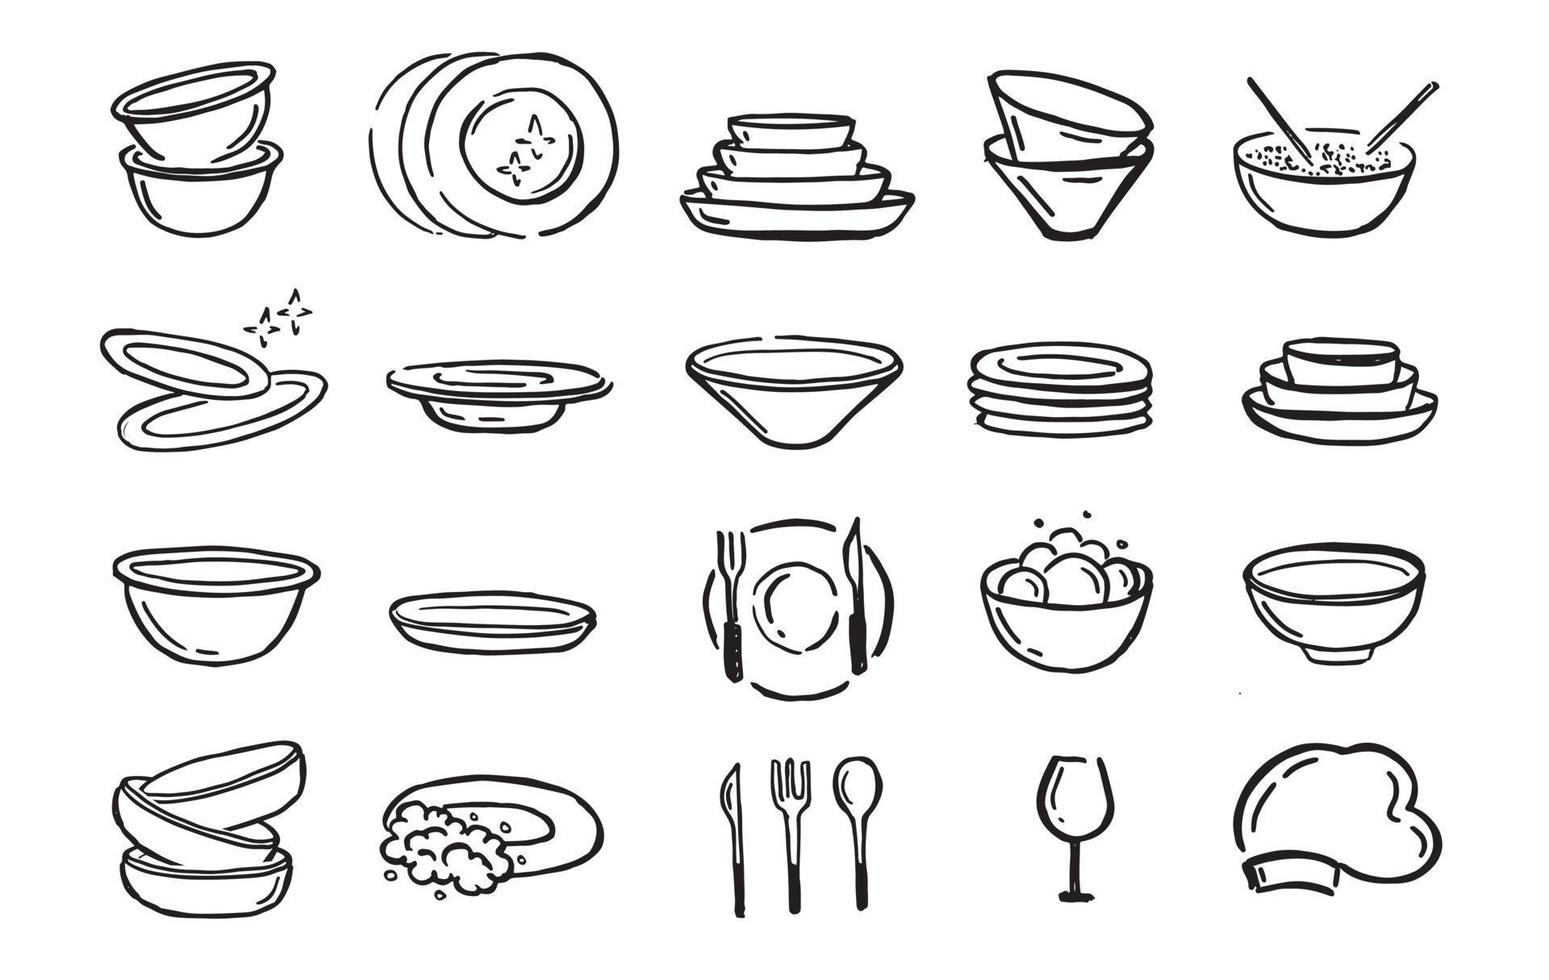 jeu d'assiettes. isolé sur fond blanc. style dessiné à la main. illustration vectorielle vecteur